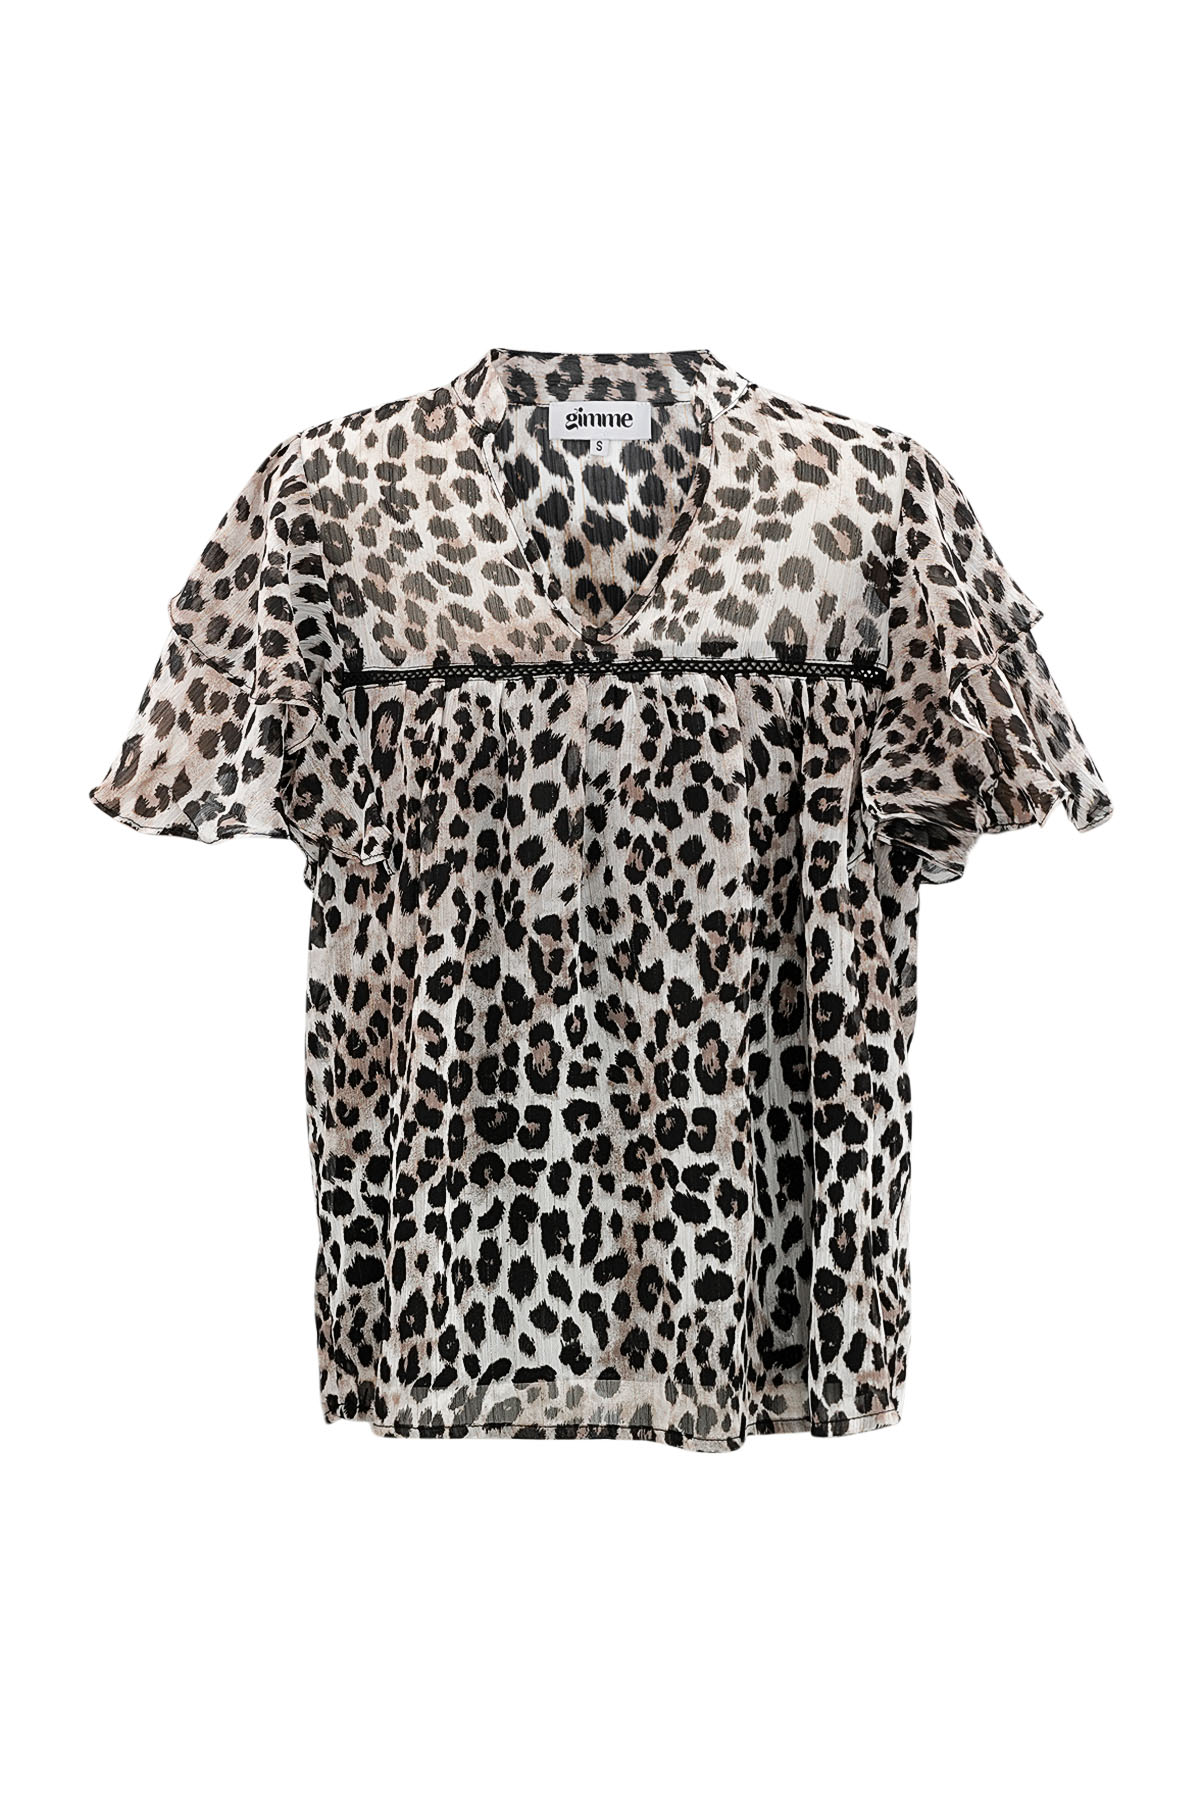 Leopard print top flare sleeves - brown